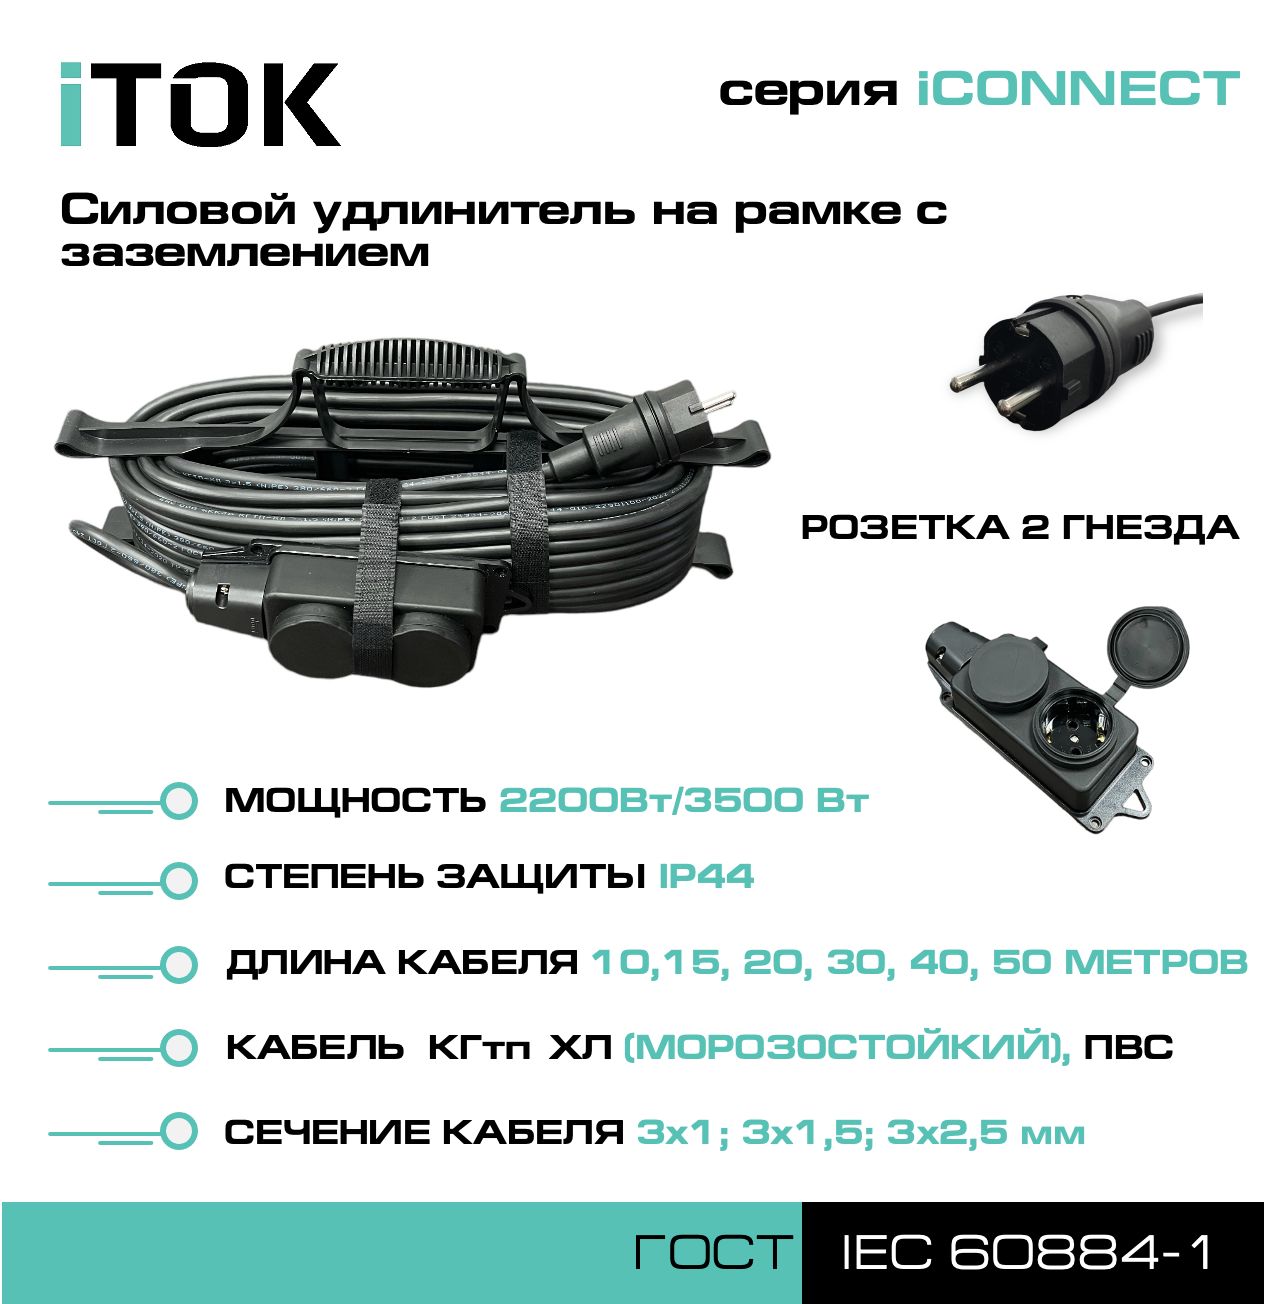 Удлинитель на рамке с заземлением серии iTOK iCONNECT КГтп-ХЛ 3х2,5 мм 2 гнезда IP44 15 м зарядные гнезда usb в виде клавиши marina 4 2 а вольтметр more 10264238